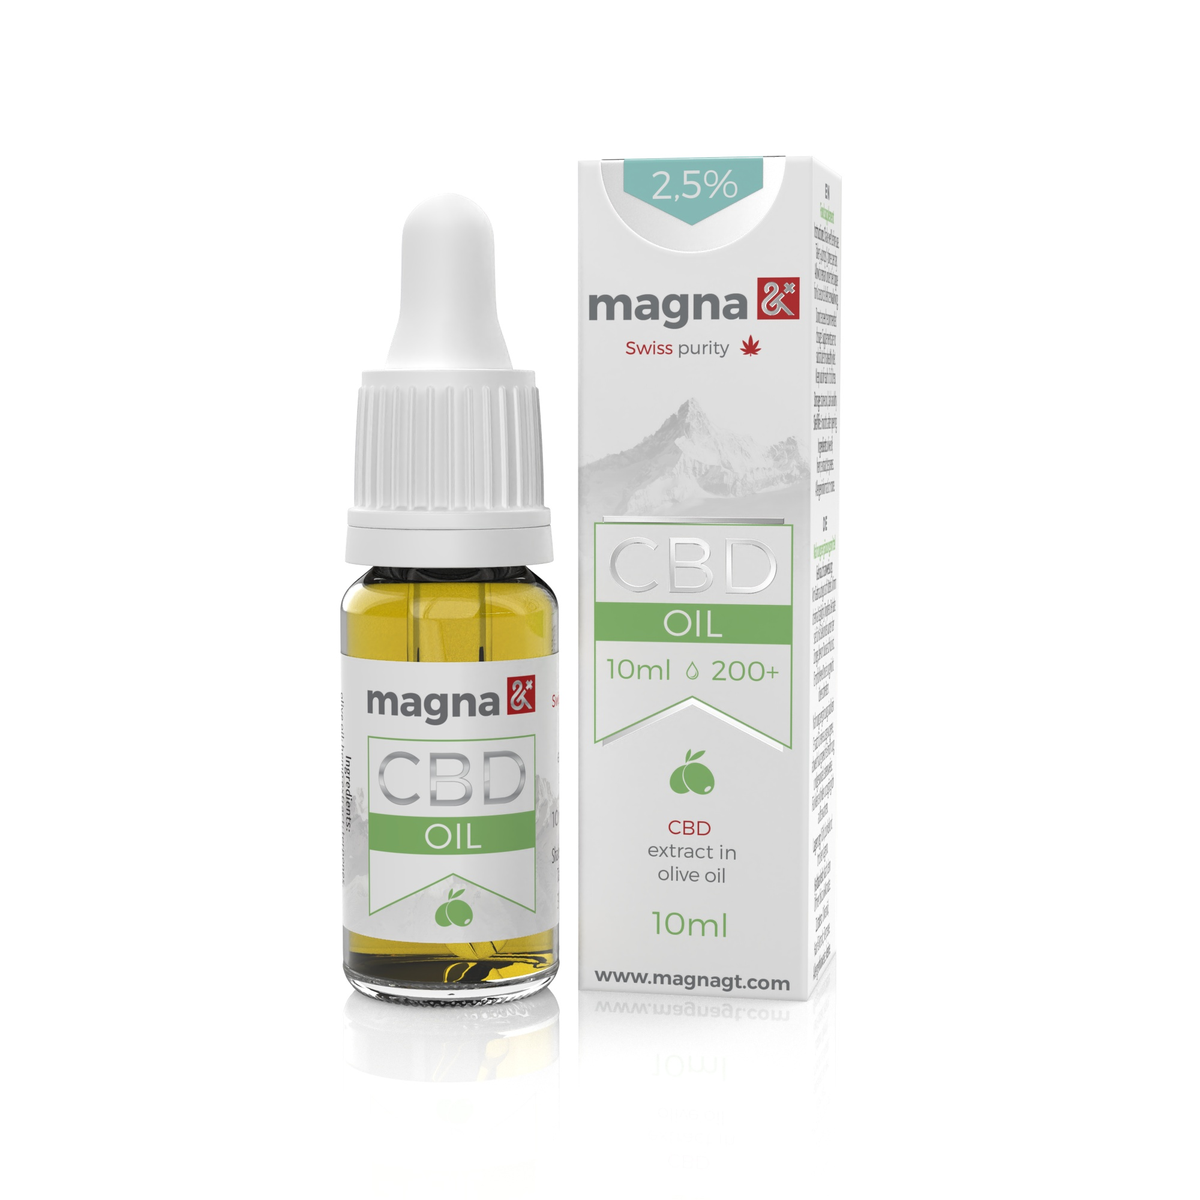 Magna G&T 2,5% CBD Olaj 250mg | 10ml | Oliva olajban